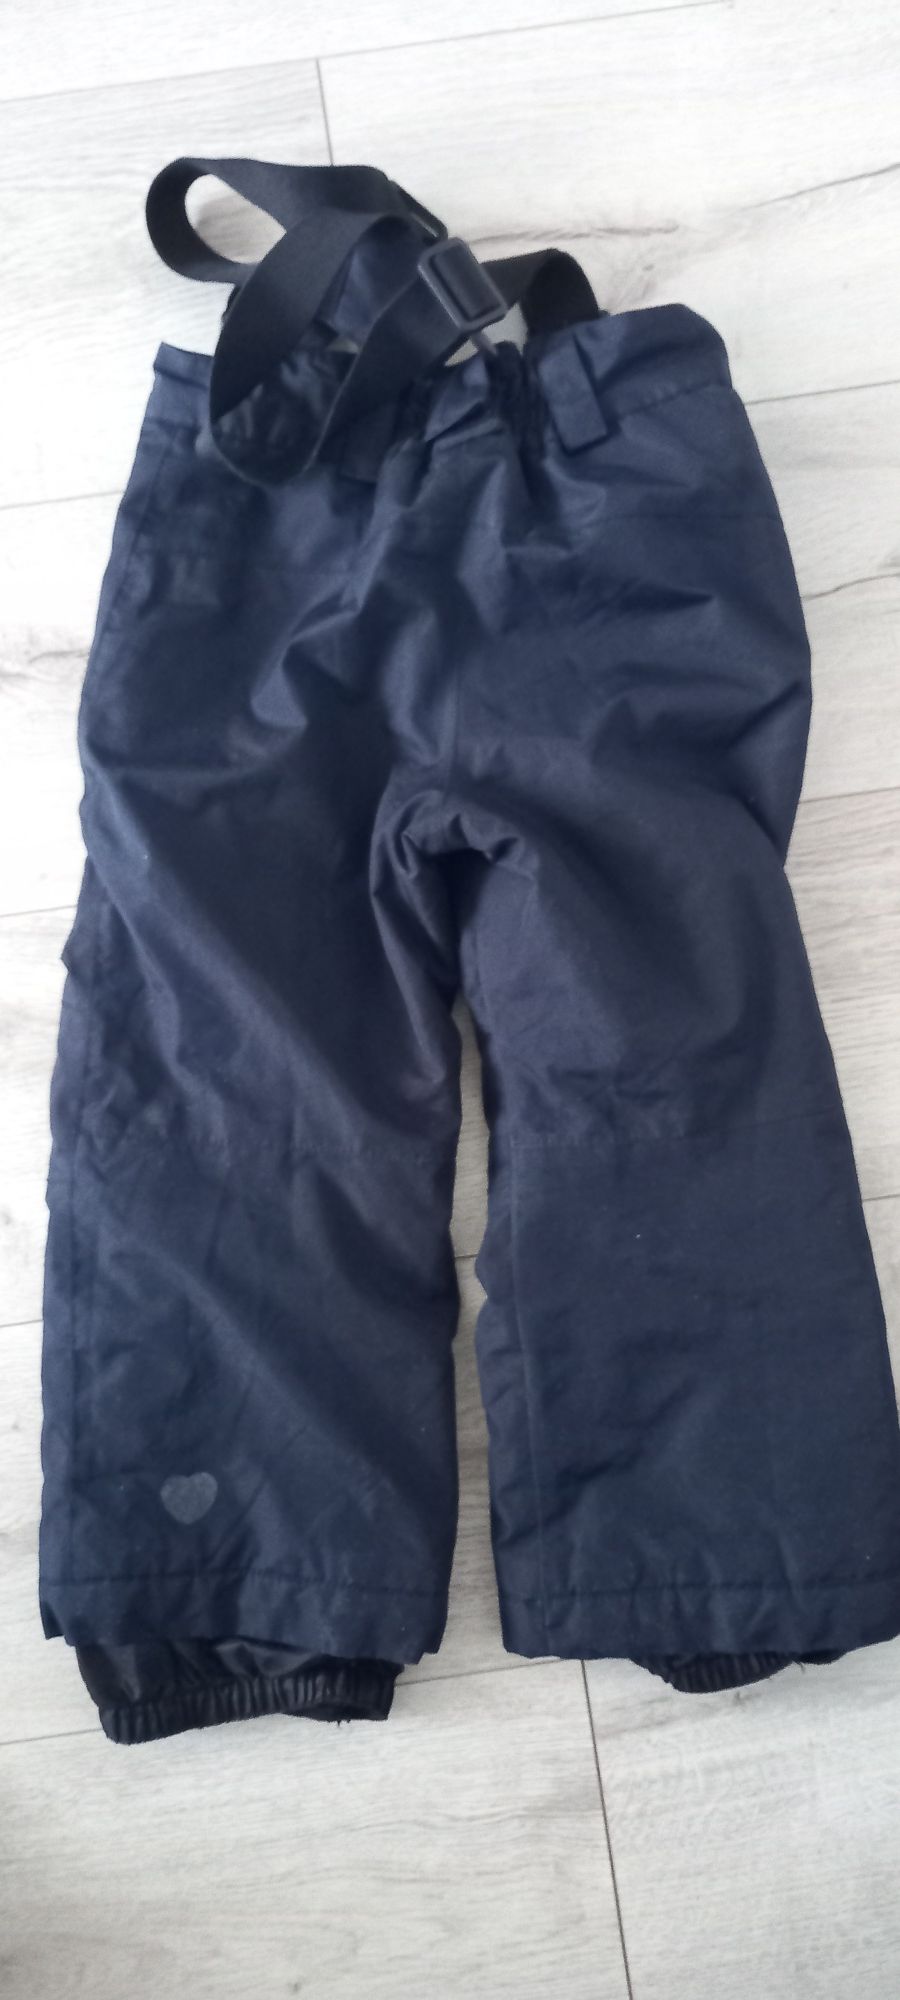 Spodnie od kombinezonu 98/104